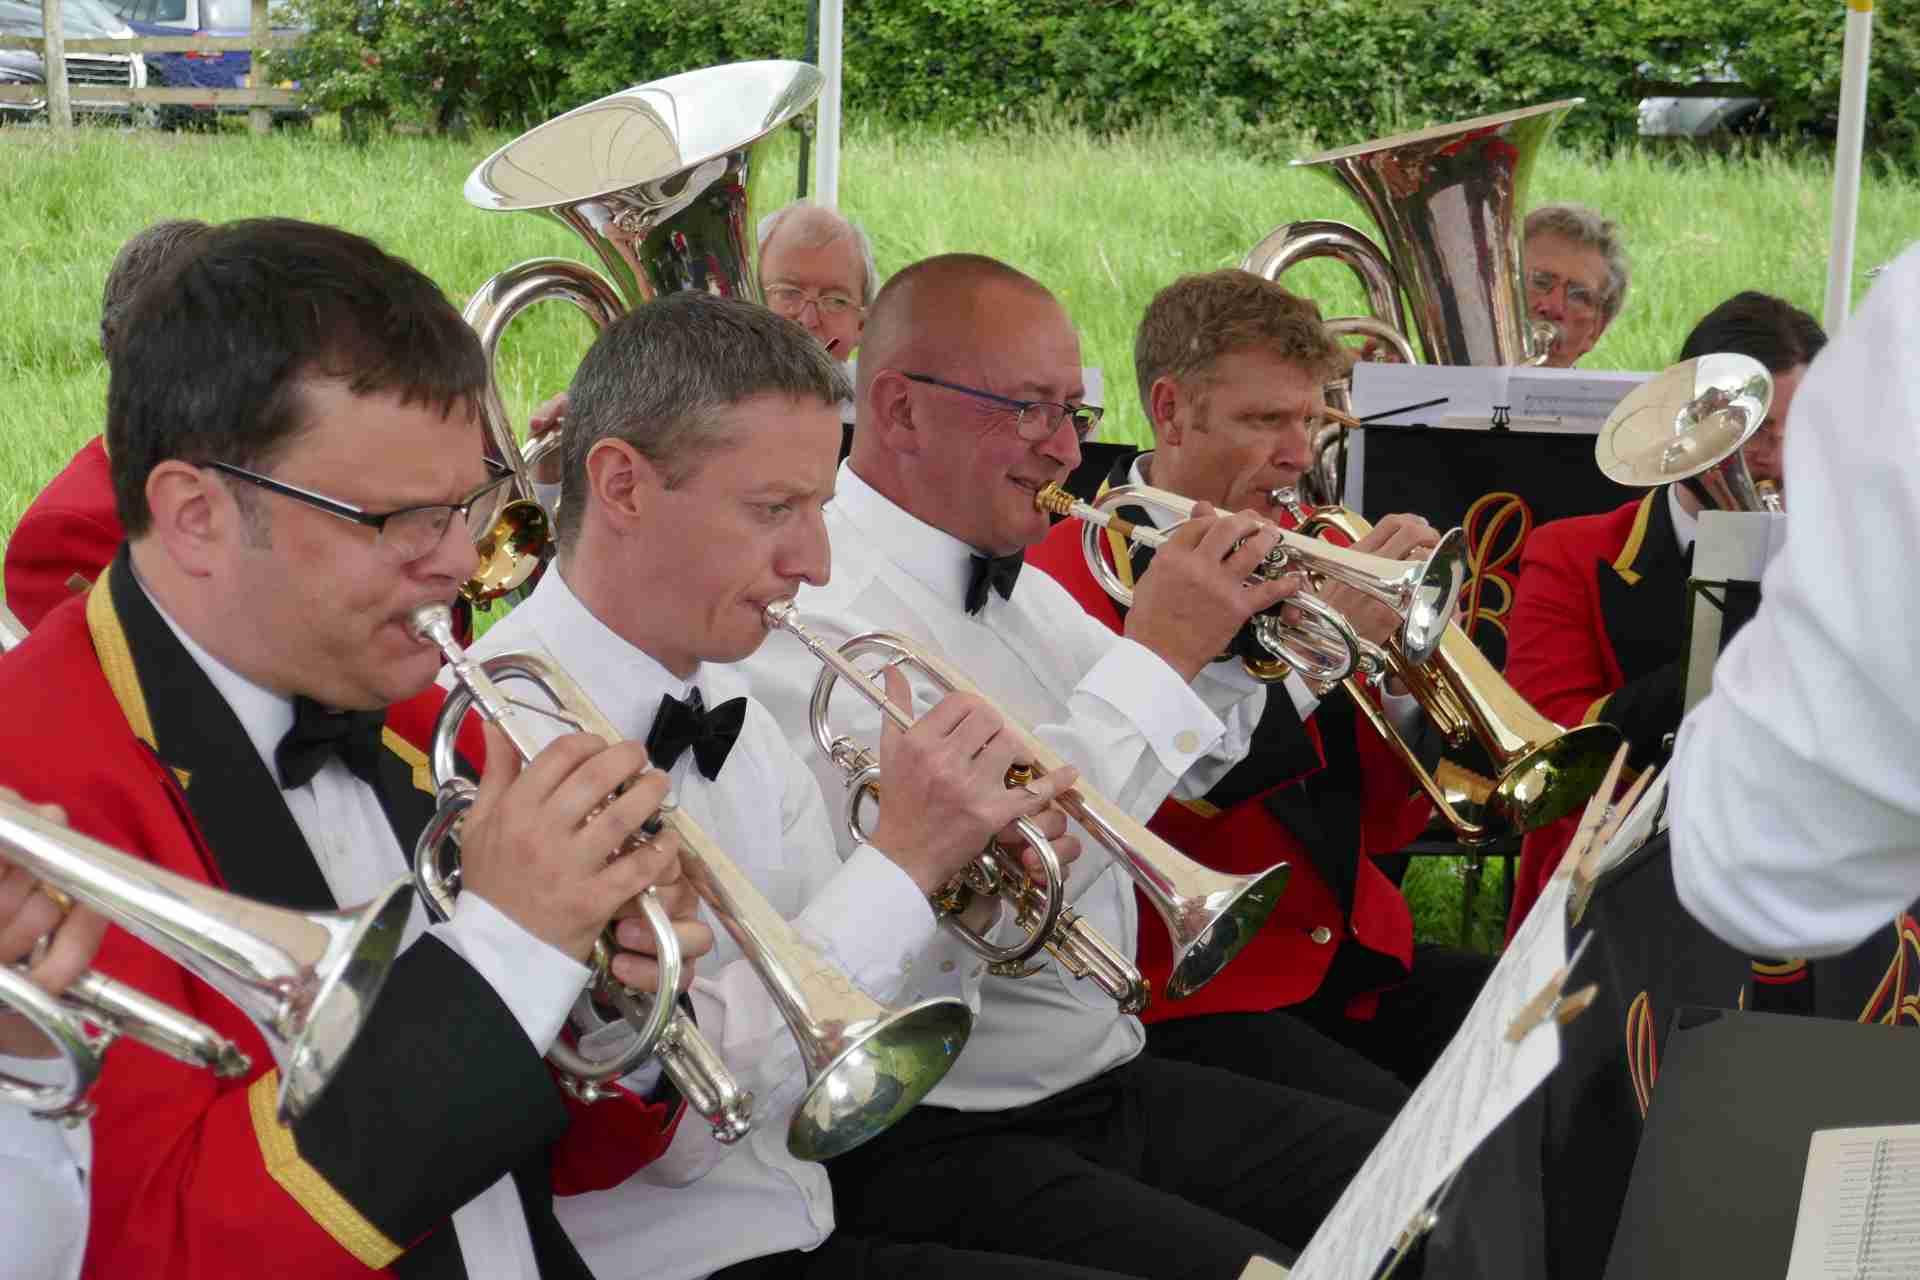 Otley Brass Band – Wharfemeadows Park, Otley